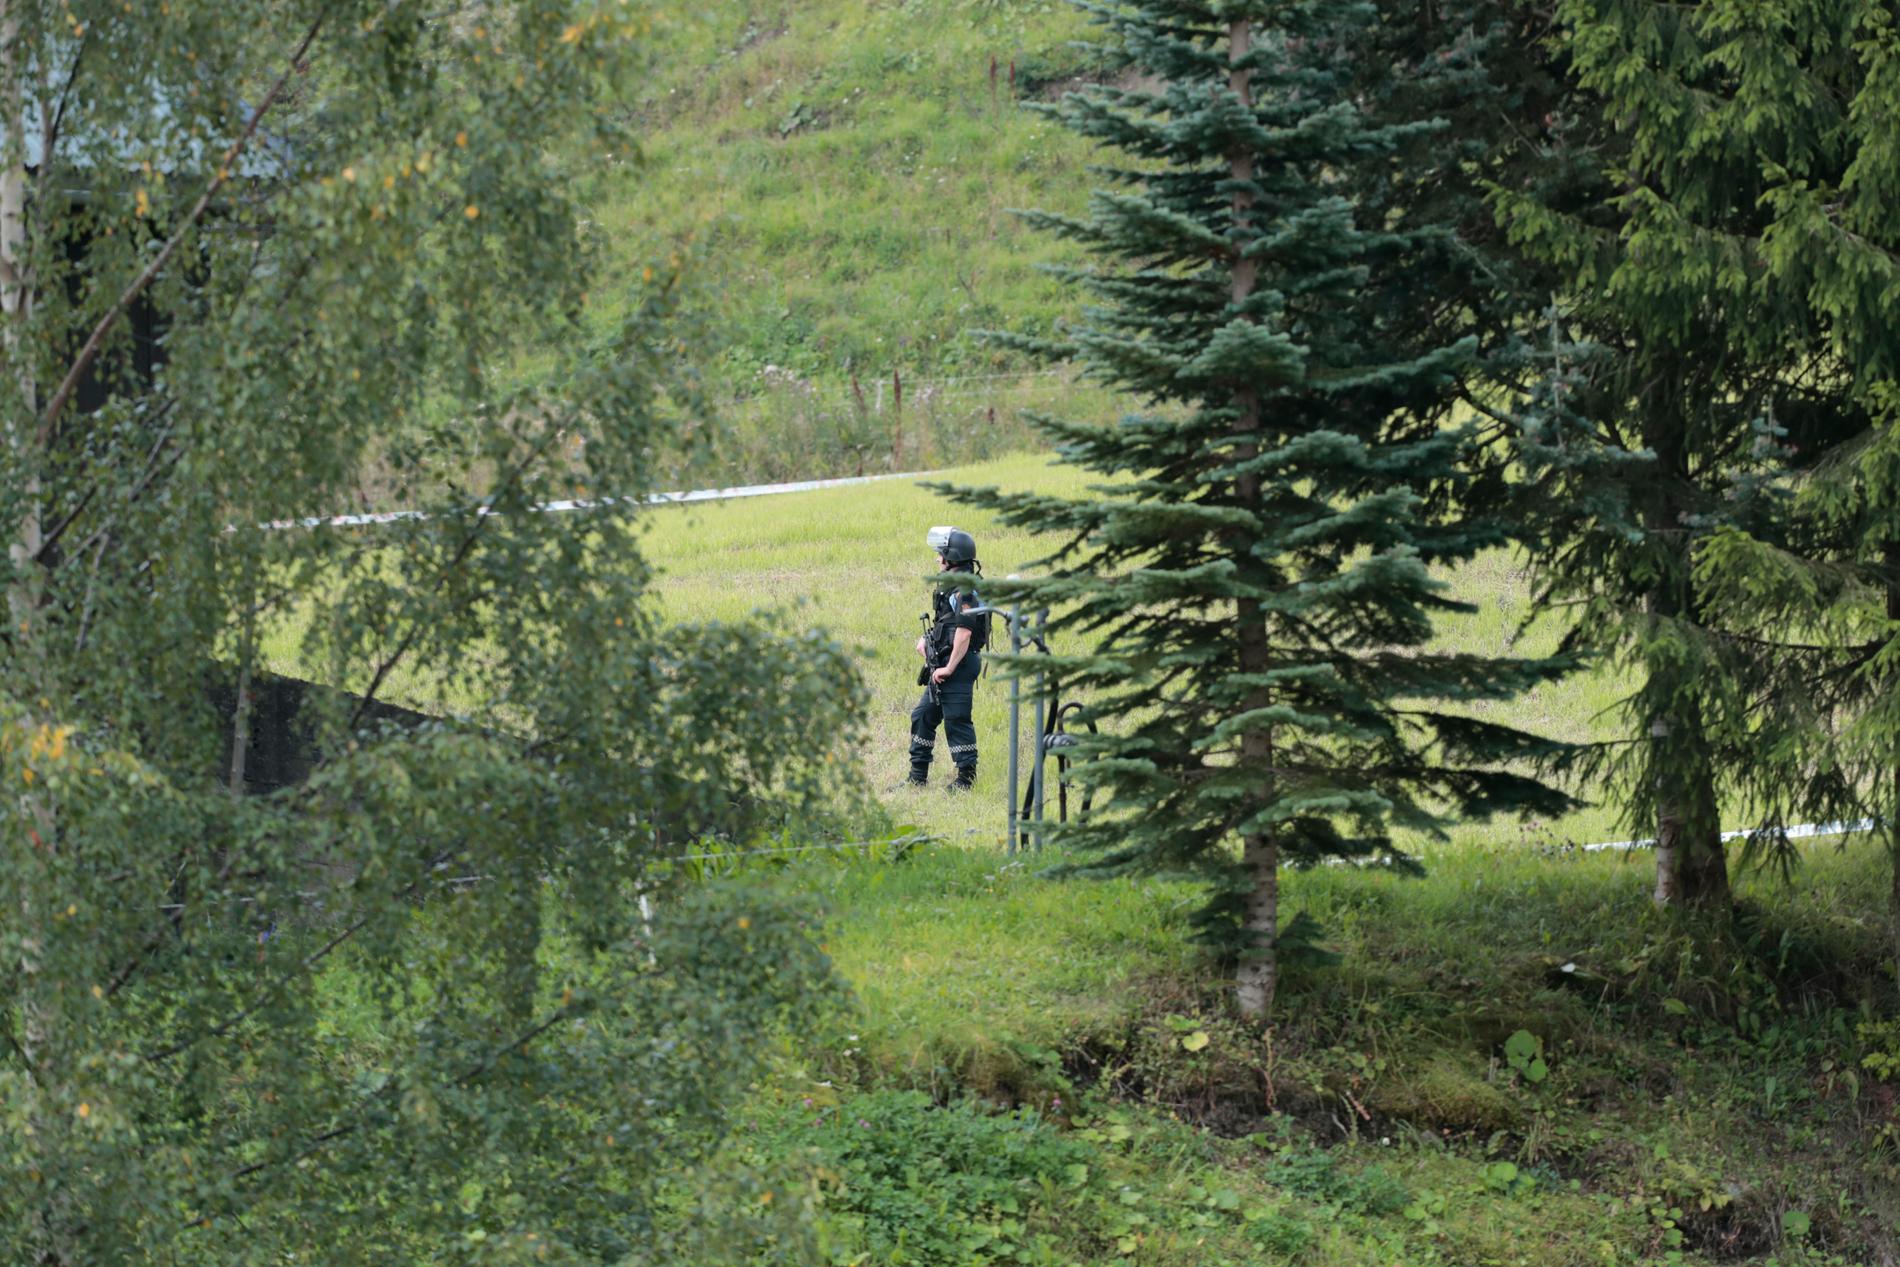 Flere væpnede politipatruljer rykket ut til Feiring i Eidsvoll. Politiet var lenge sparsommelige med opplysninger om saken. Senere opplyser de at det er startet drapsetterforskning, og en person er pågrepet.
Foto: Lise Åserud / NTB scanpix